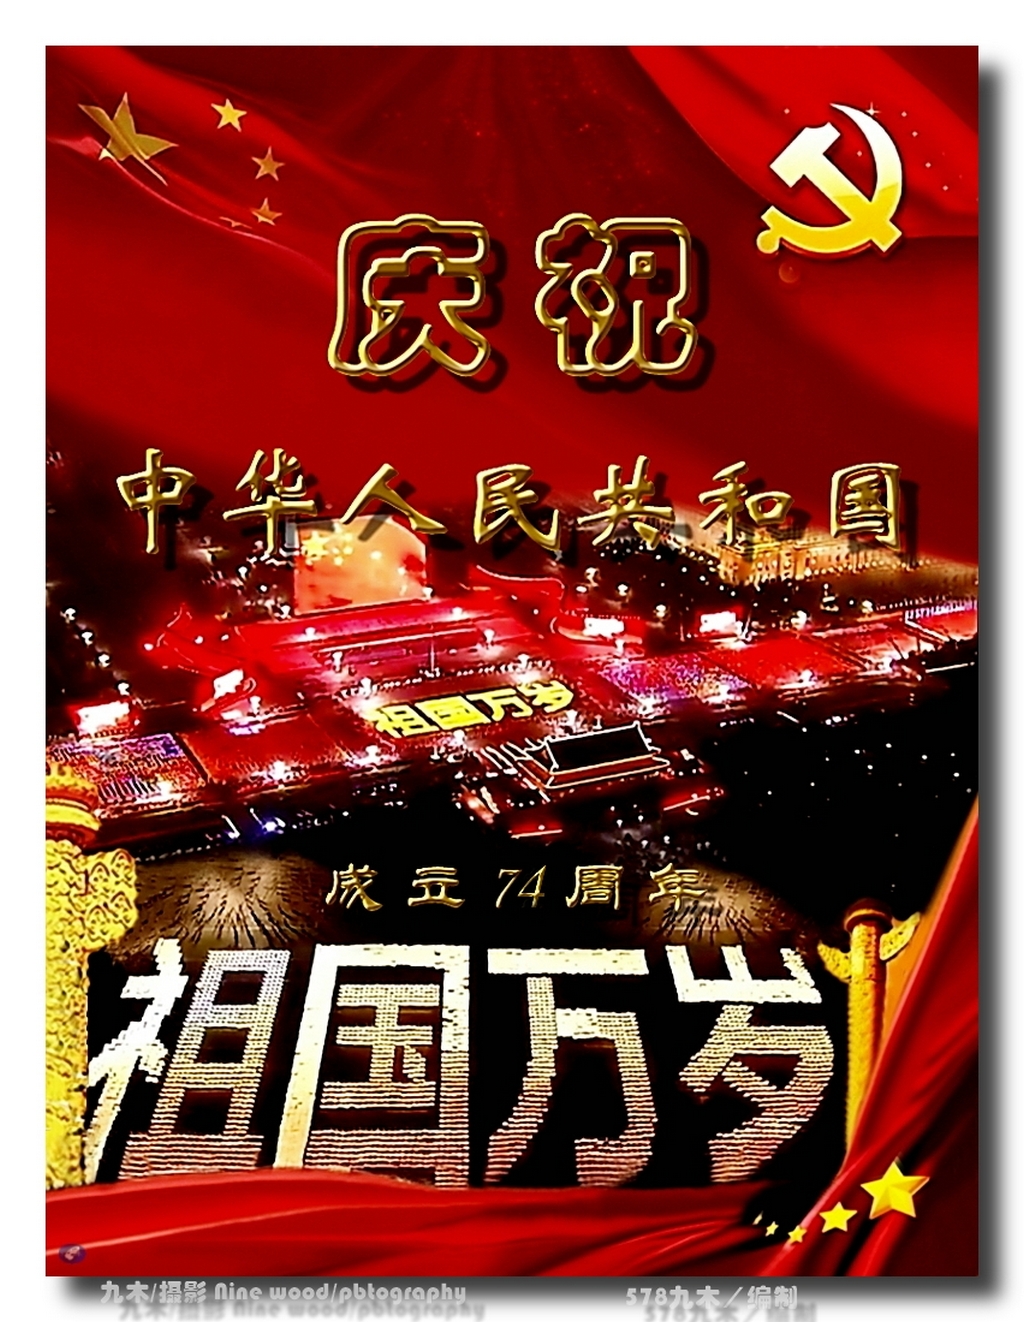 DSC_6523_dh_3dh庆祝中华人民共和国成立72周年_dh_dh.jpg